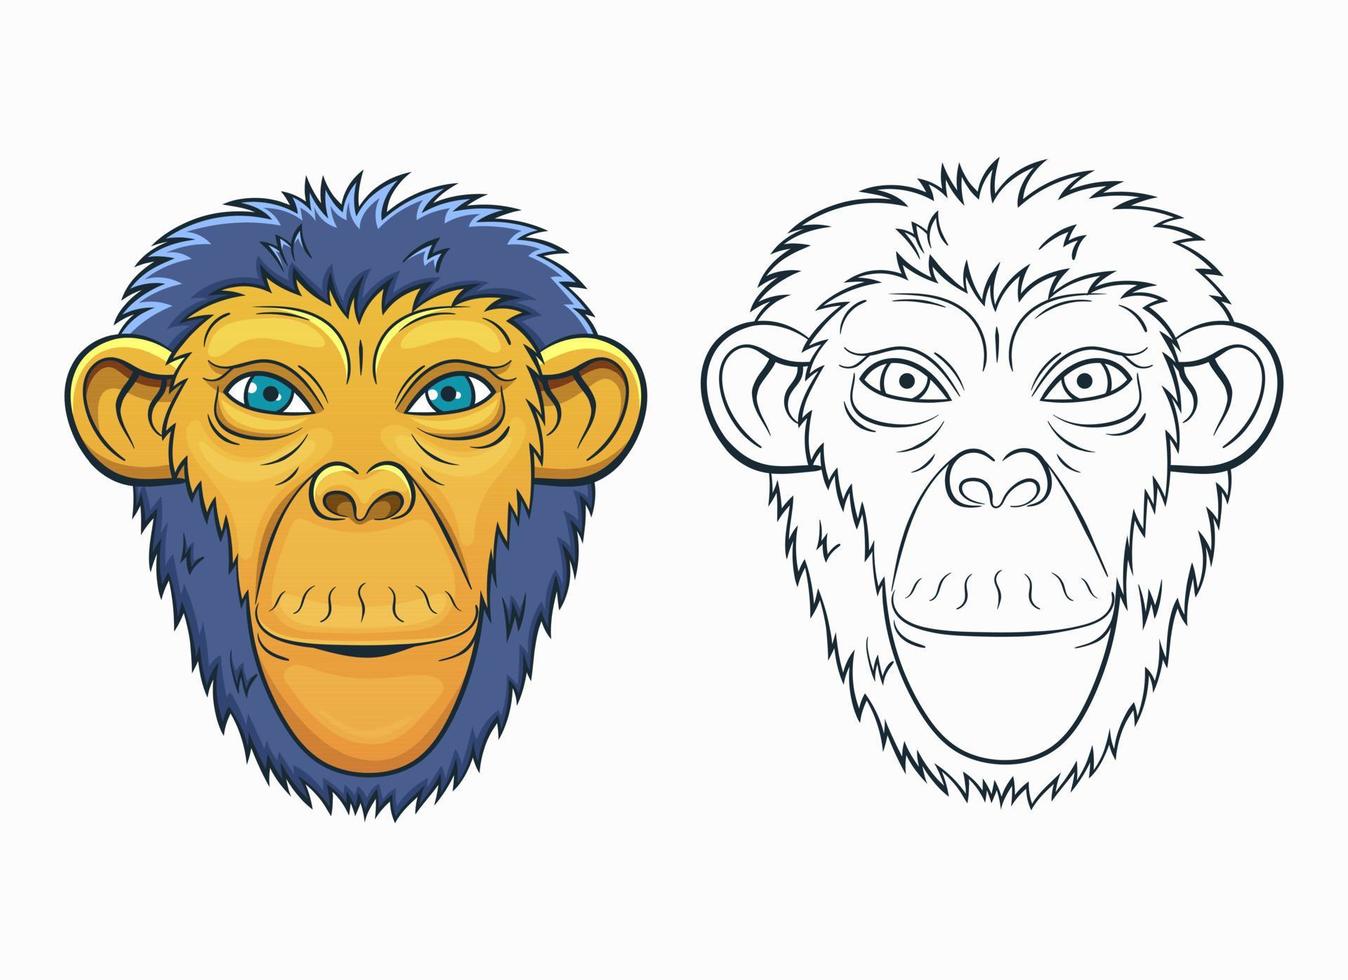 Monkey vector design illustration isolated on white background